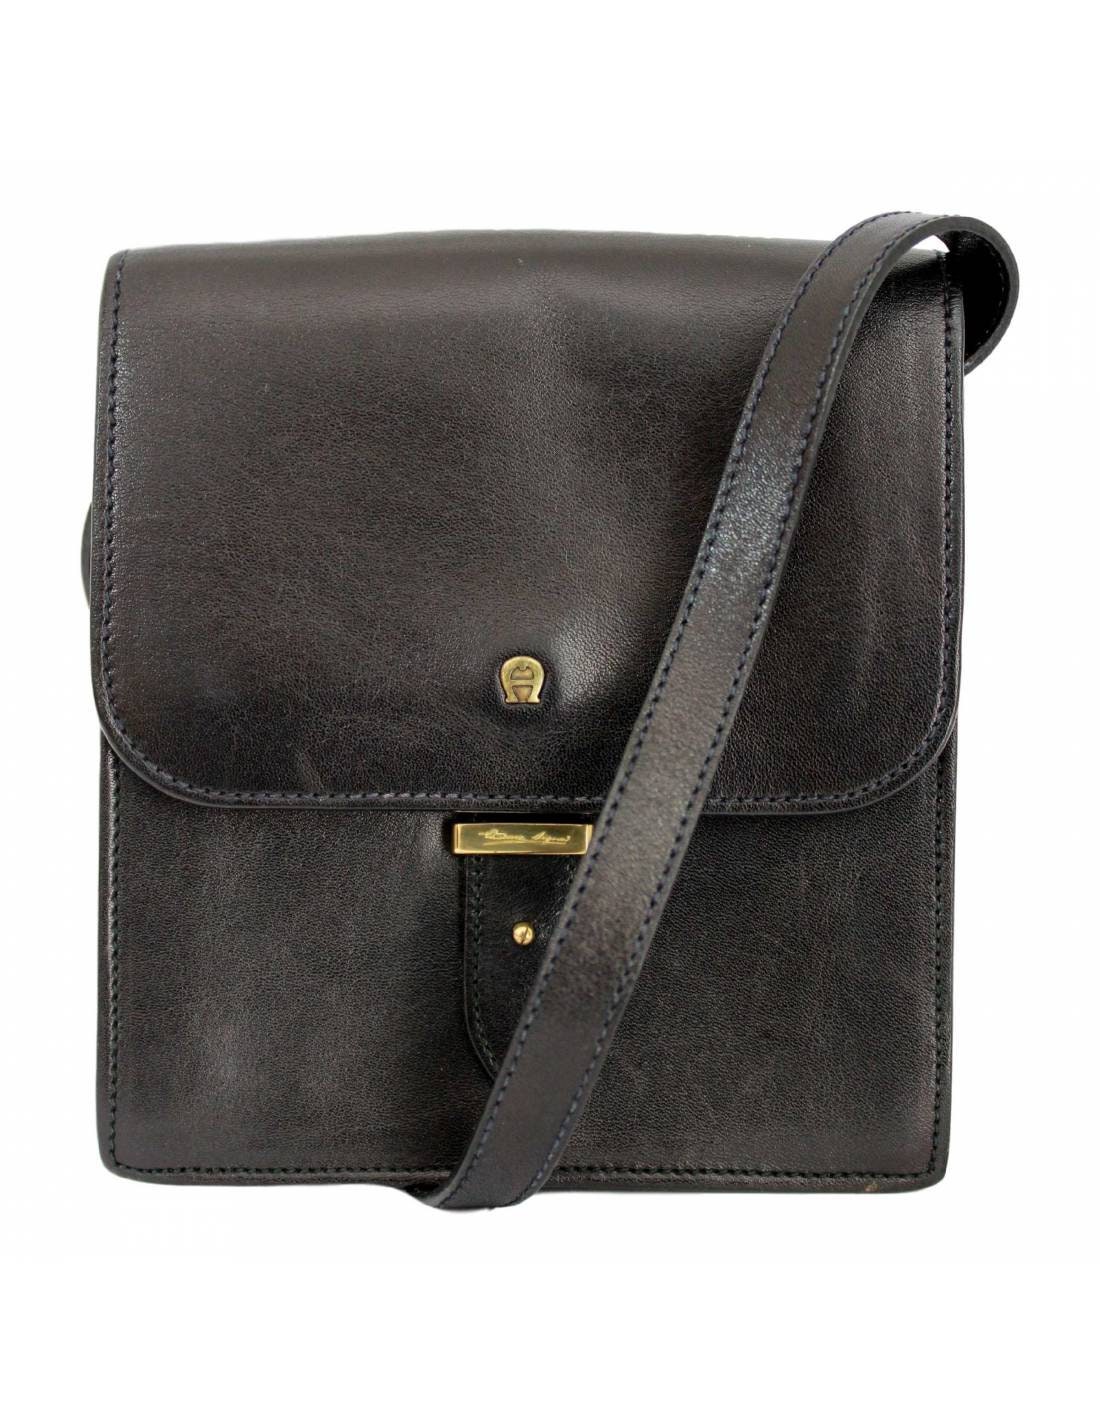 Etienne Aigner Vintage Little Shoulder Bag Leather Black | Etsy